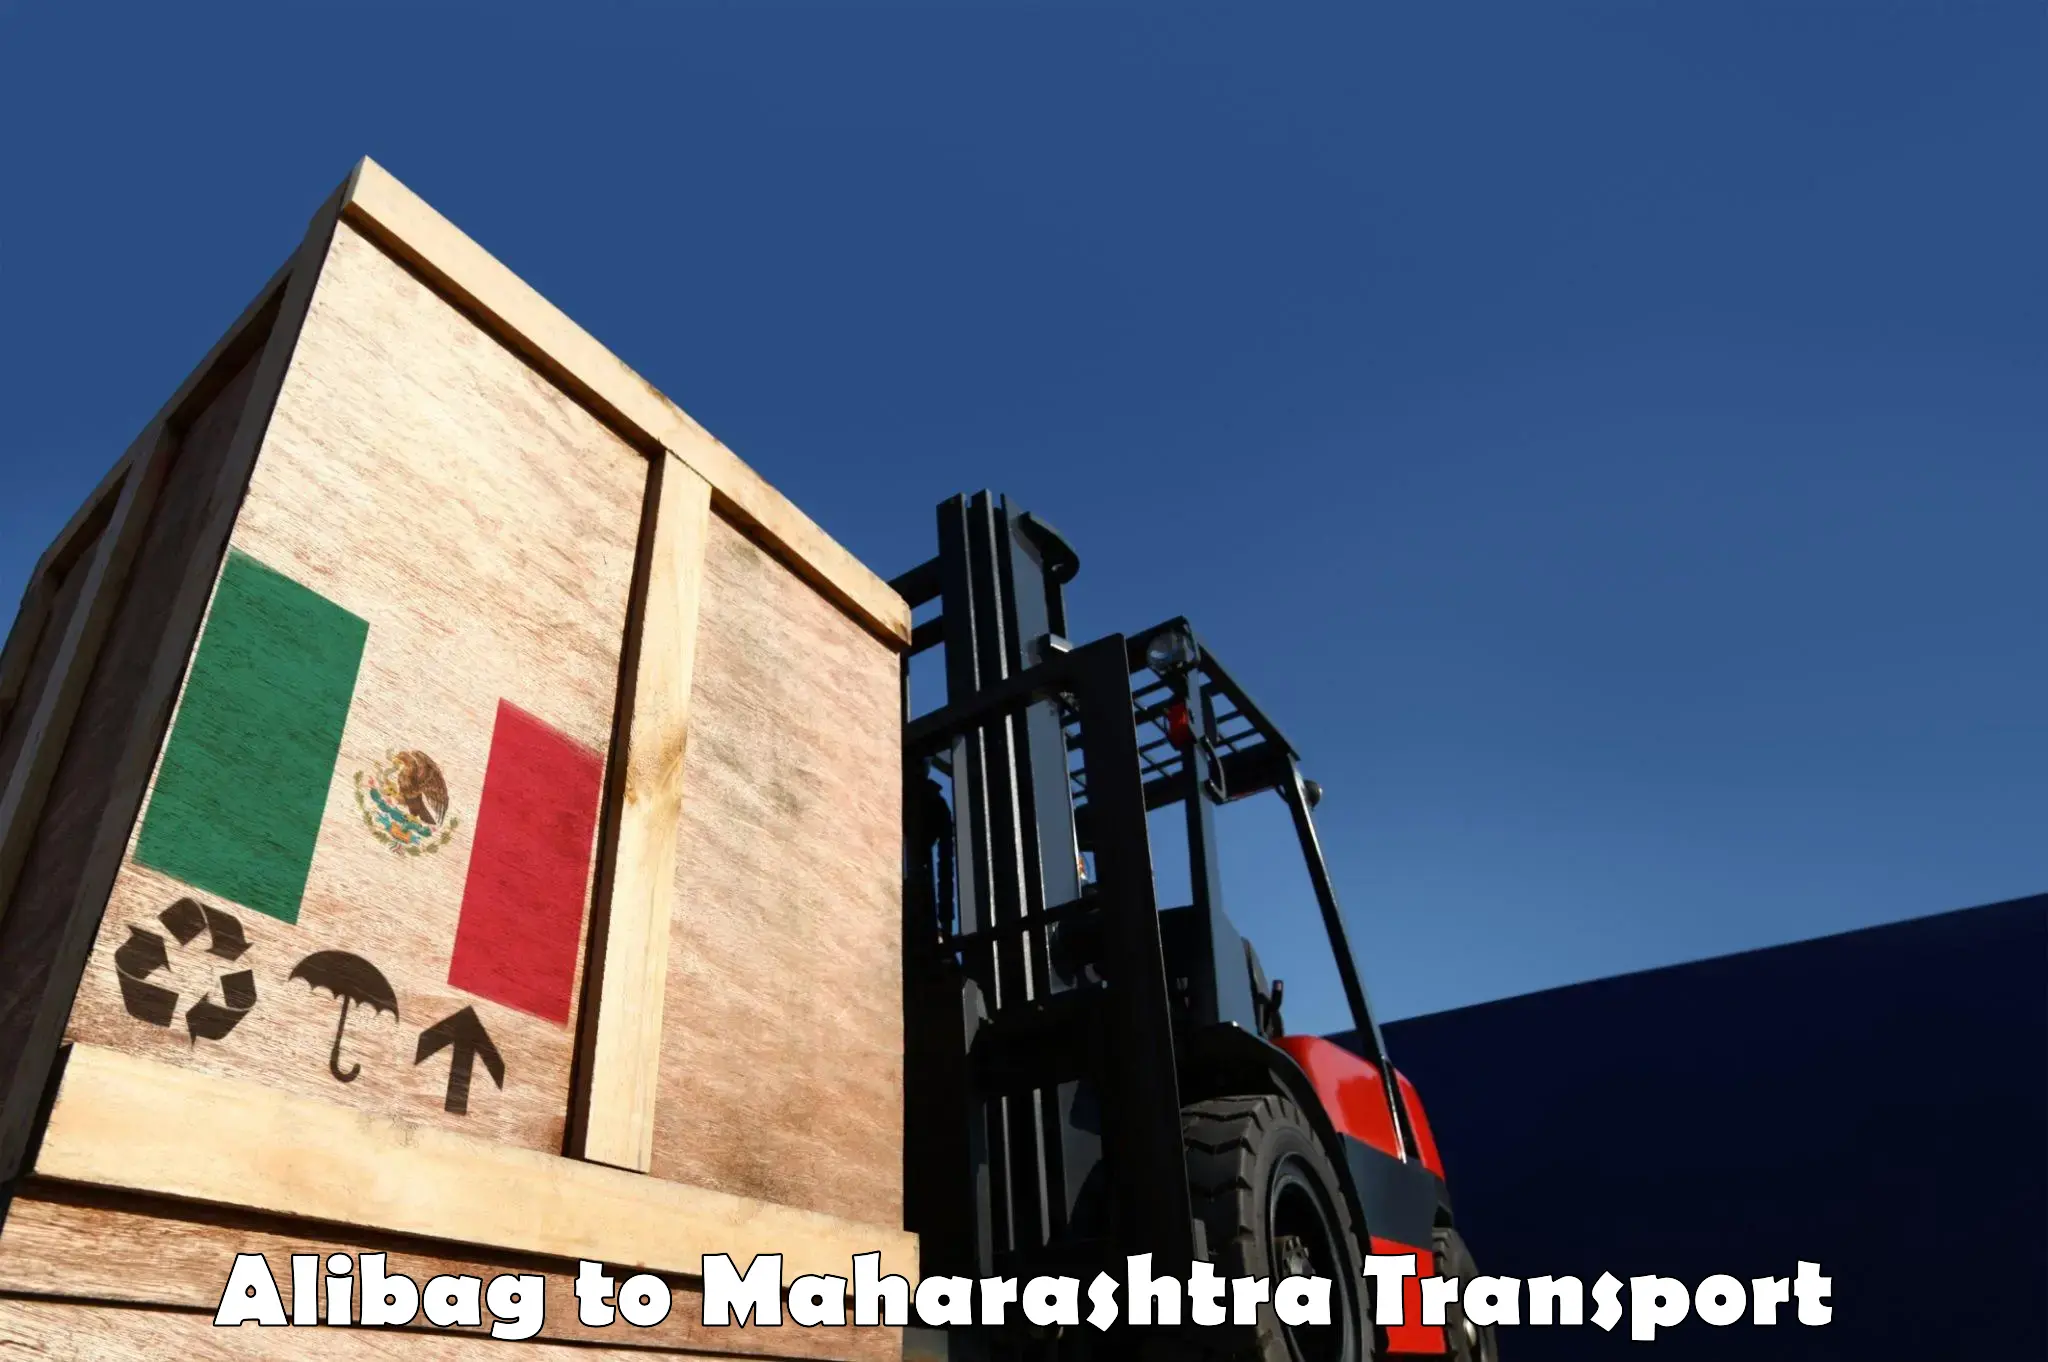 Online transport service Alibag to Parli